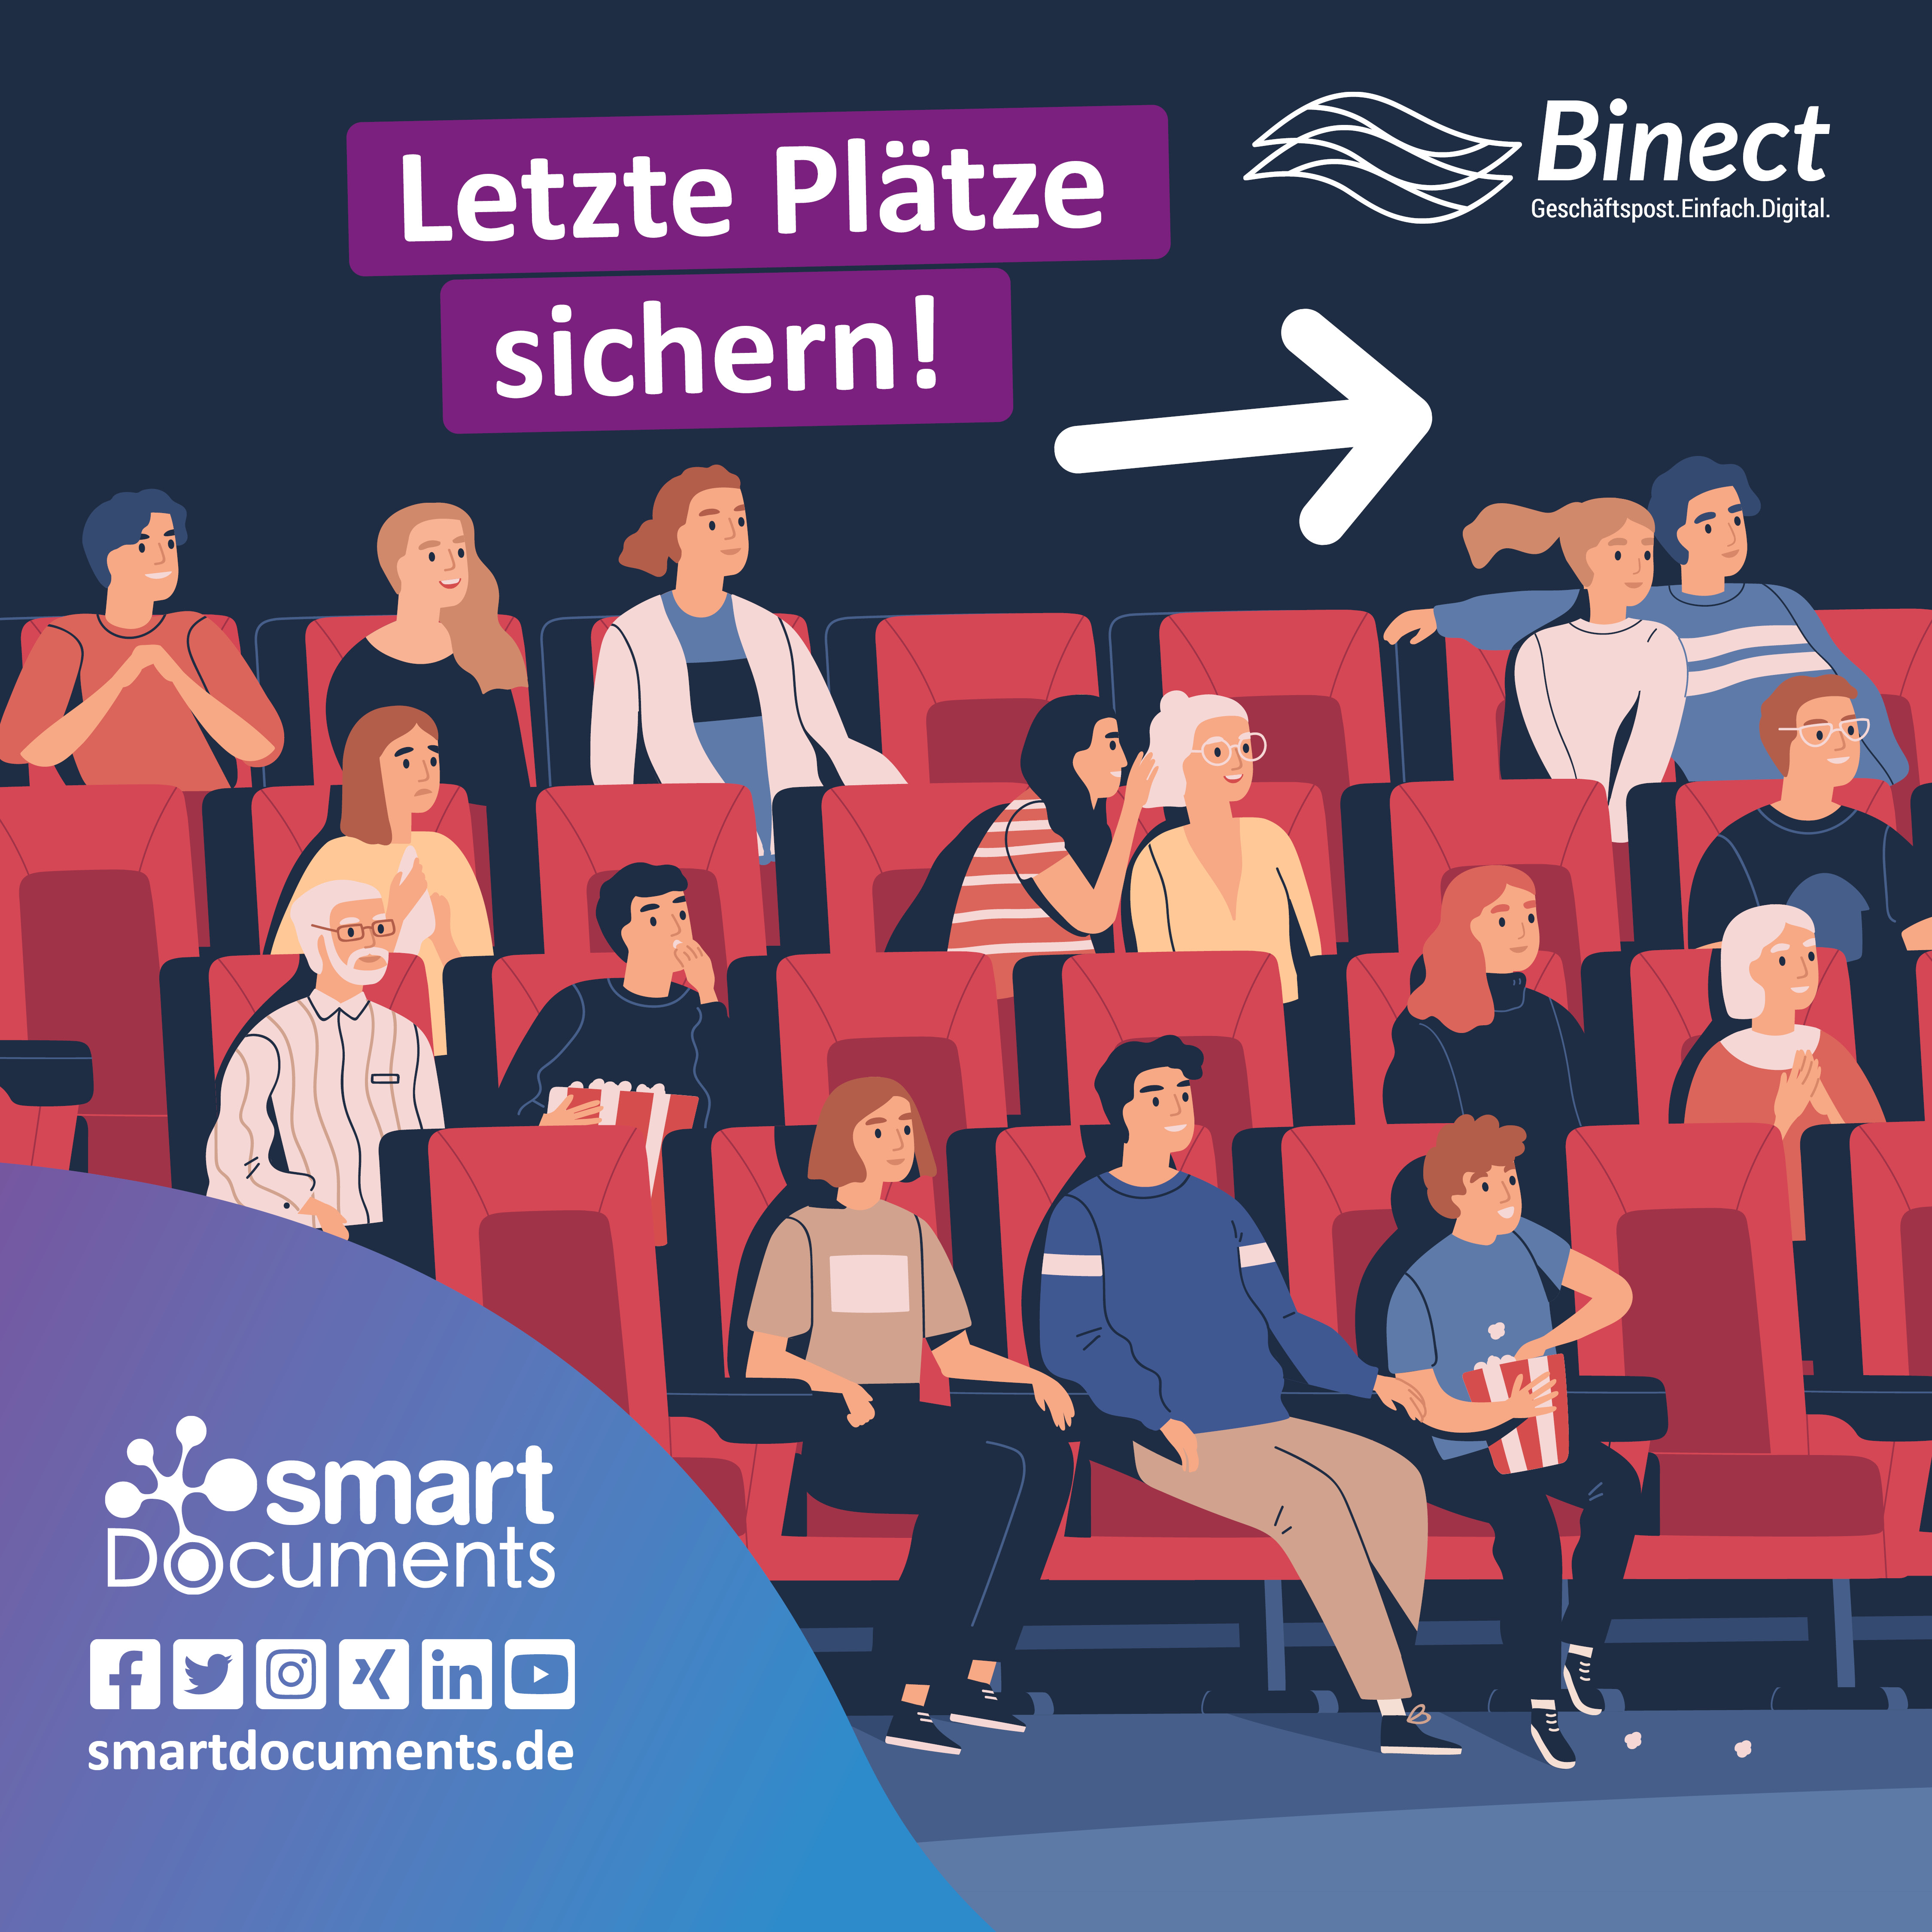 Vektorgrafik: Menschen im Kinosaal mit ein paar leeren Plätzen und dem Slogan "Letzte Plätze sichern!" sowie den beiden Firmenlogos SmartDocuments und Binect